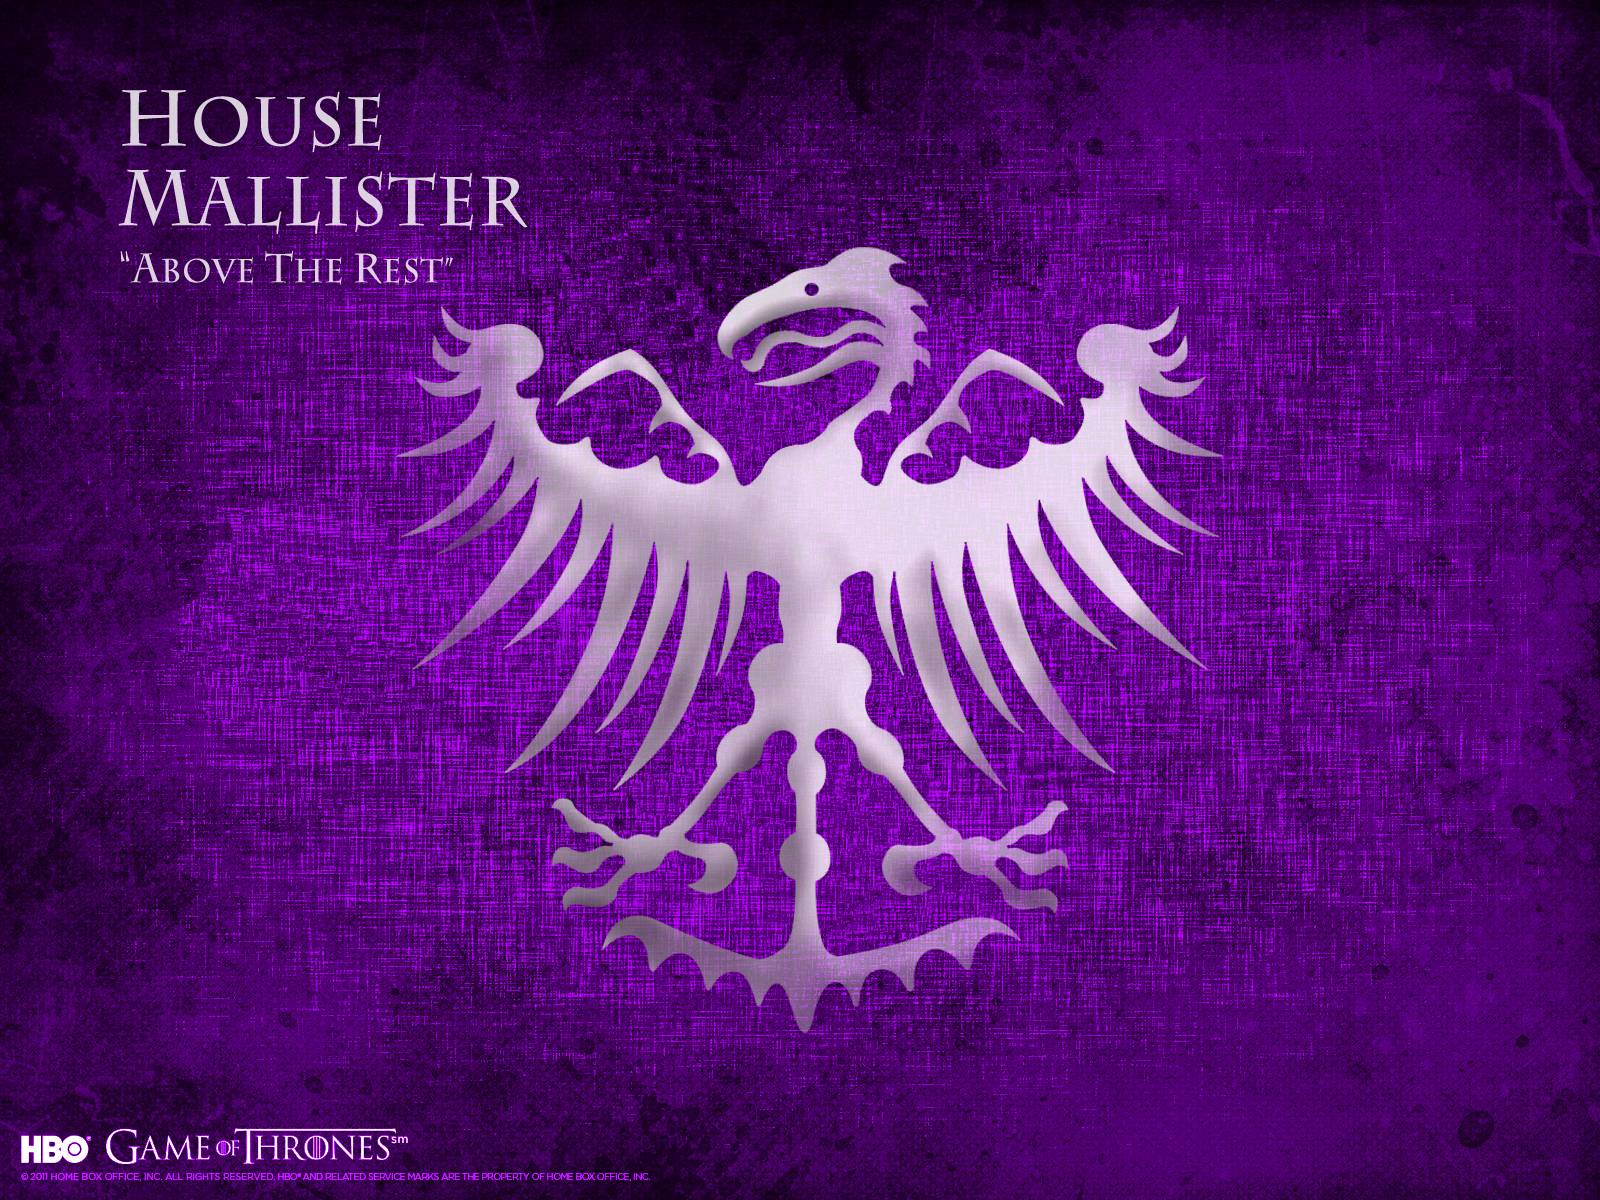 House Mallister of Thrones Wallpaper